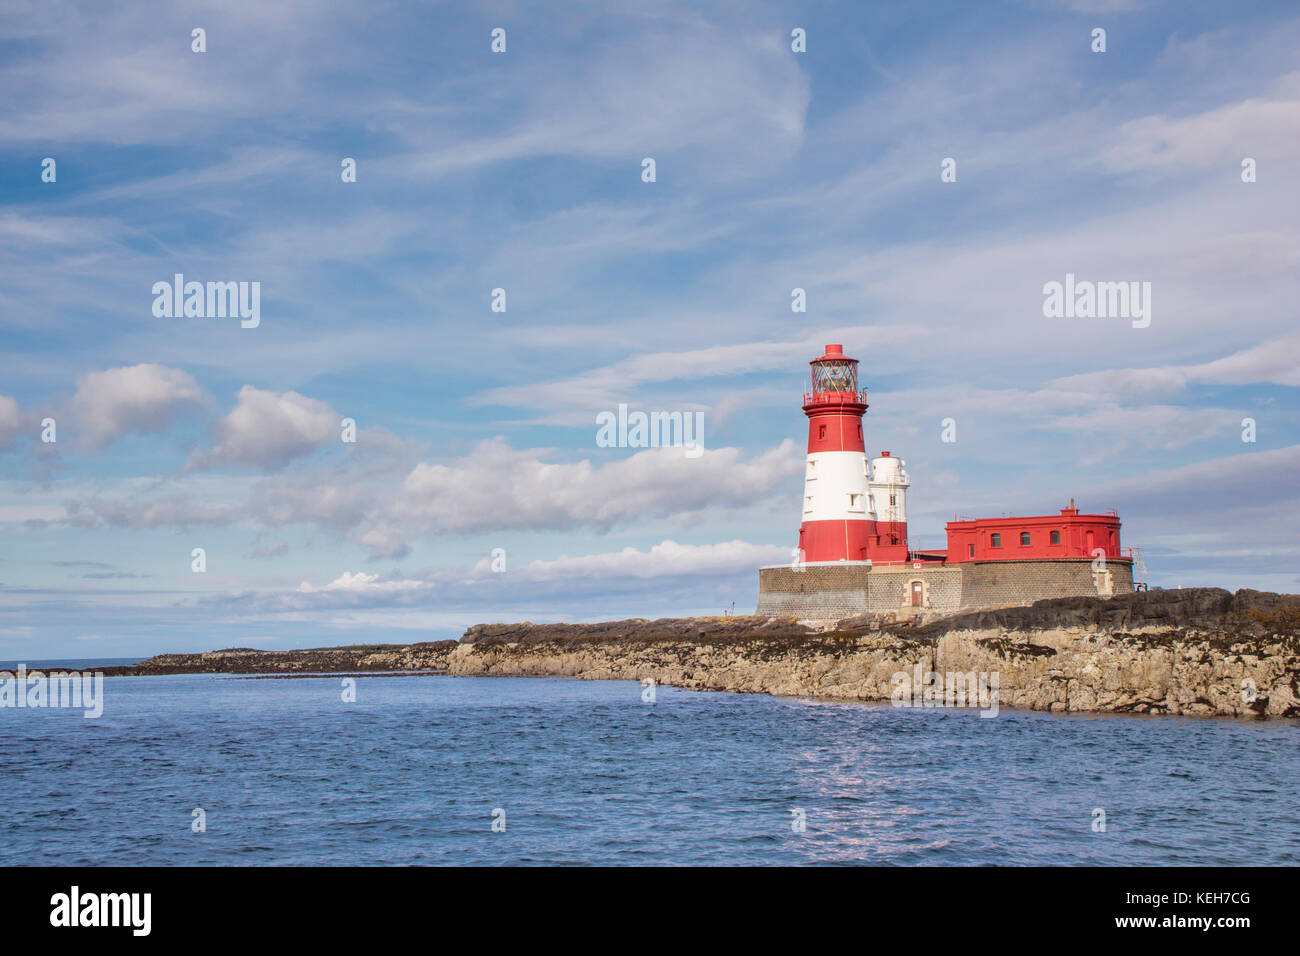 Longstone lighthouse on the Farne Islands, Northumberland, England, UK Stock Photo